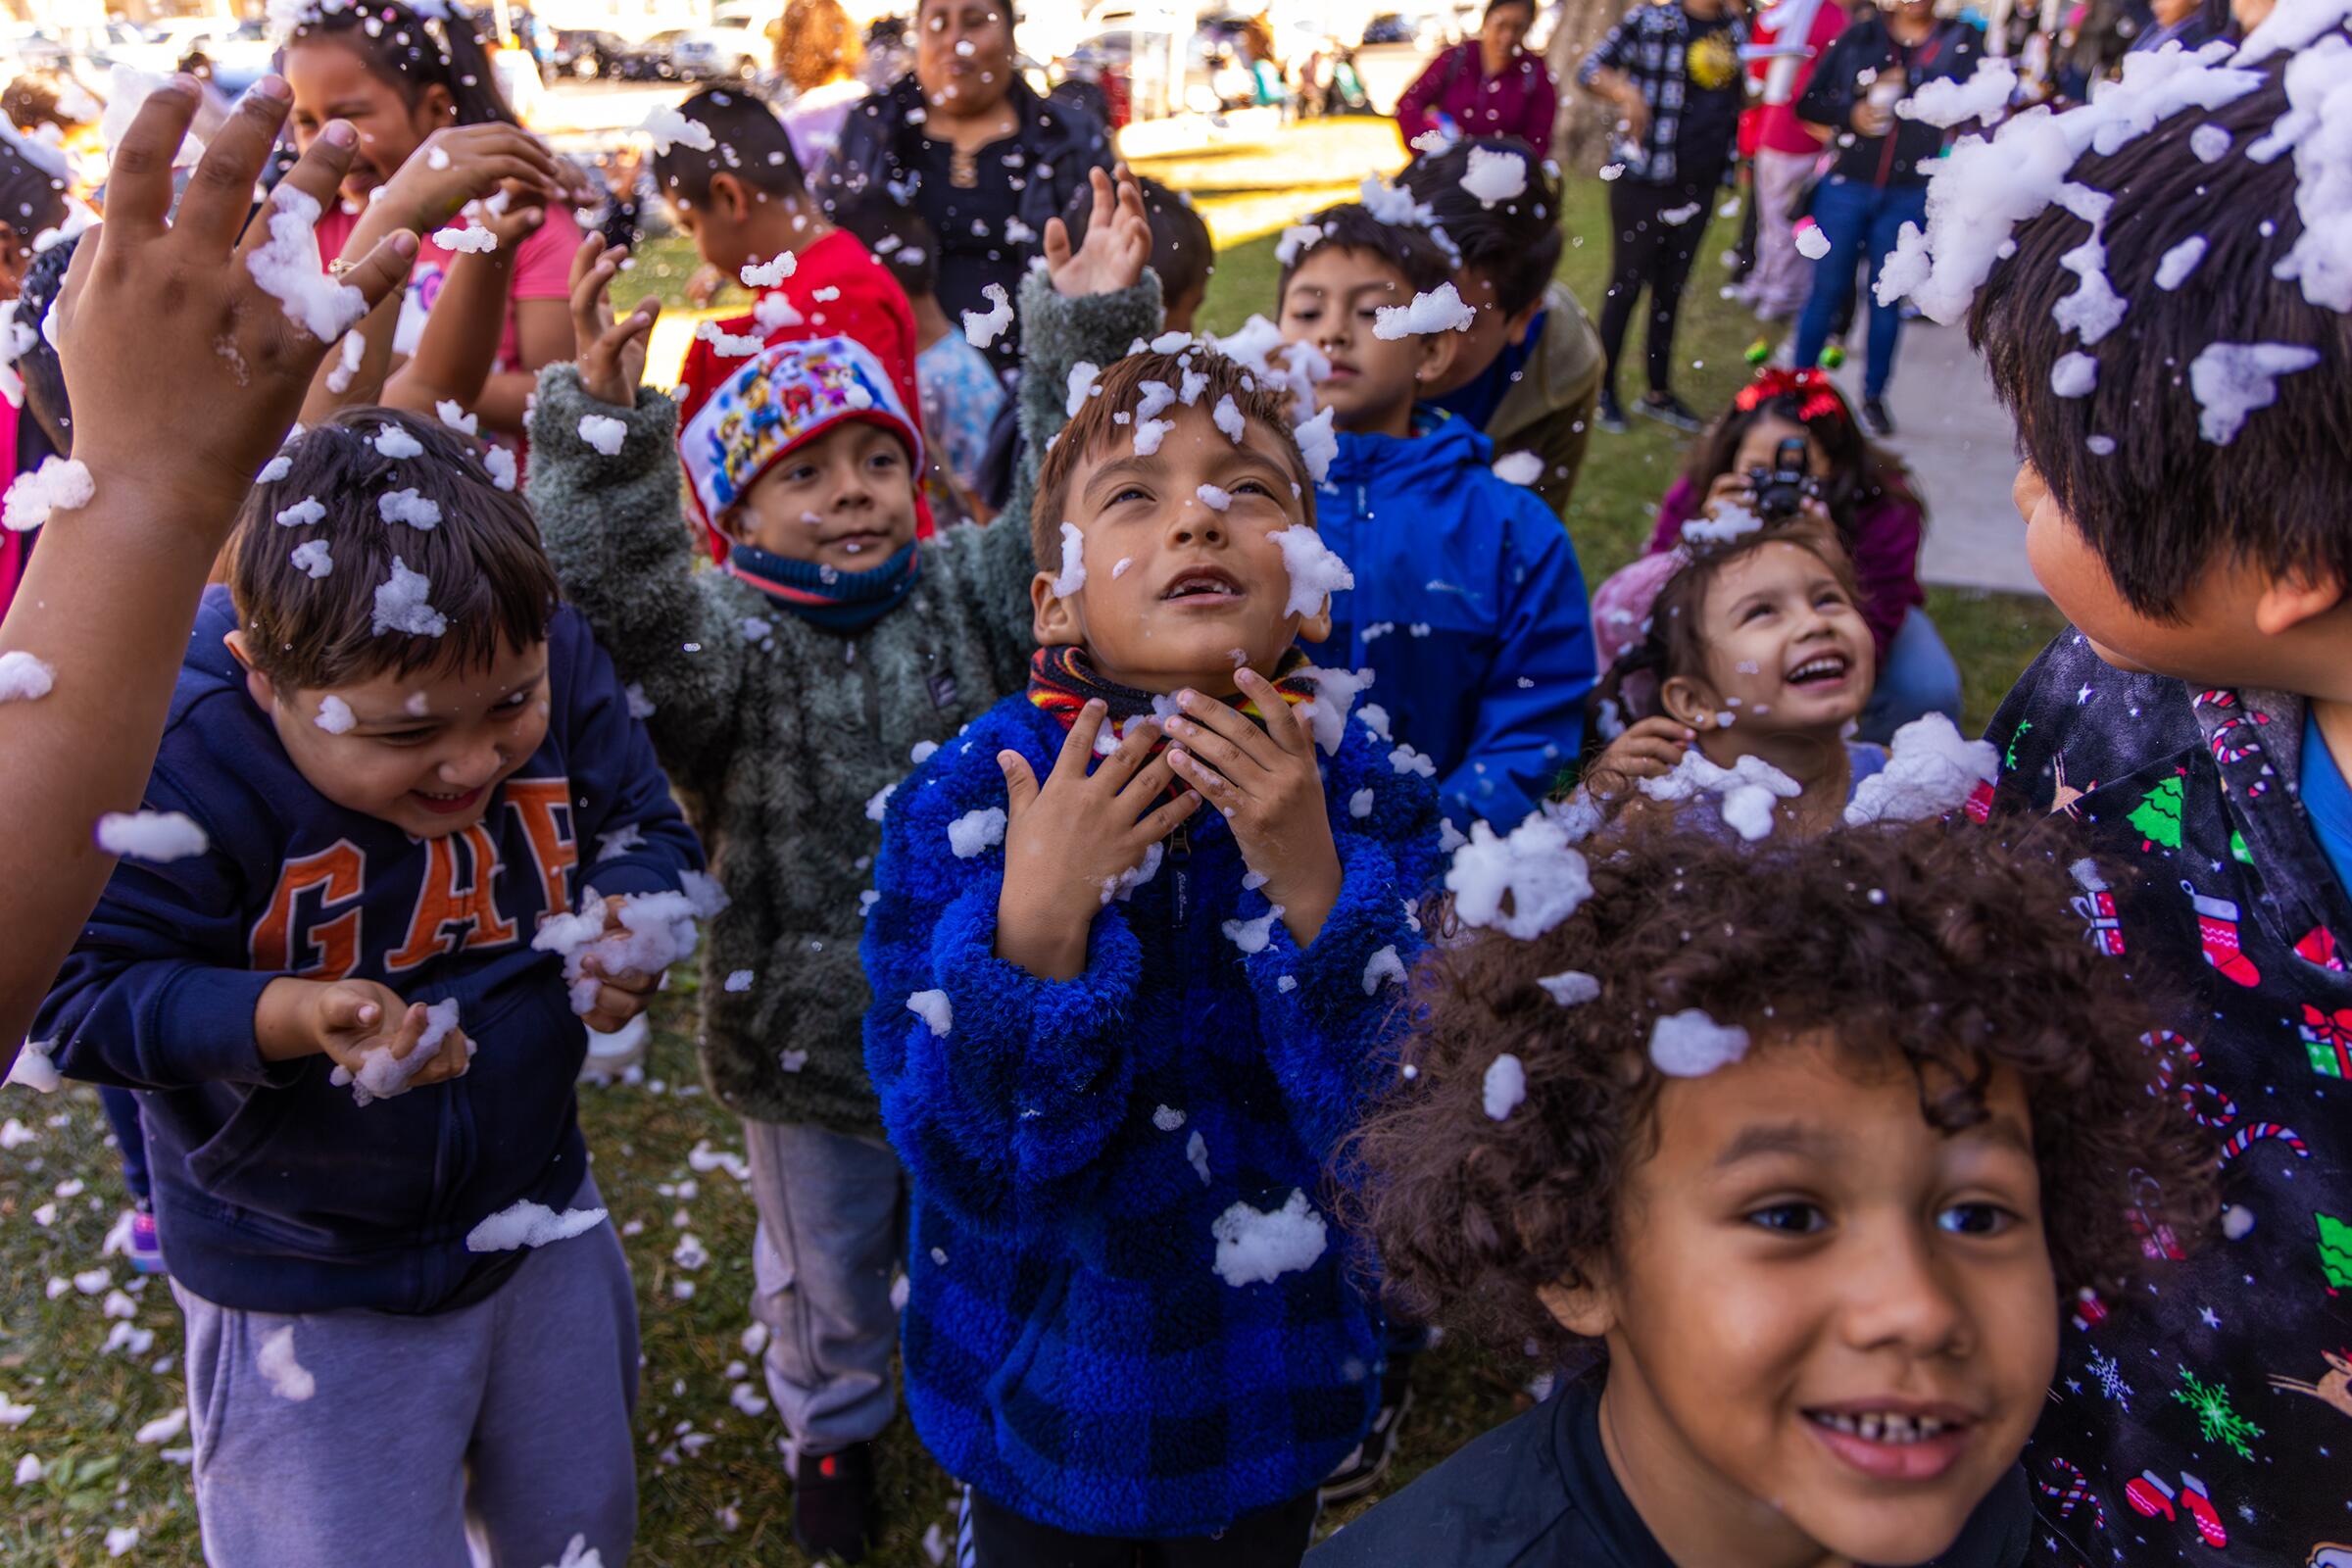 Children gather snowflakes